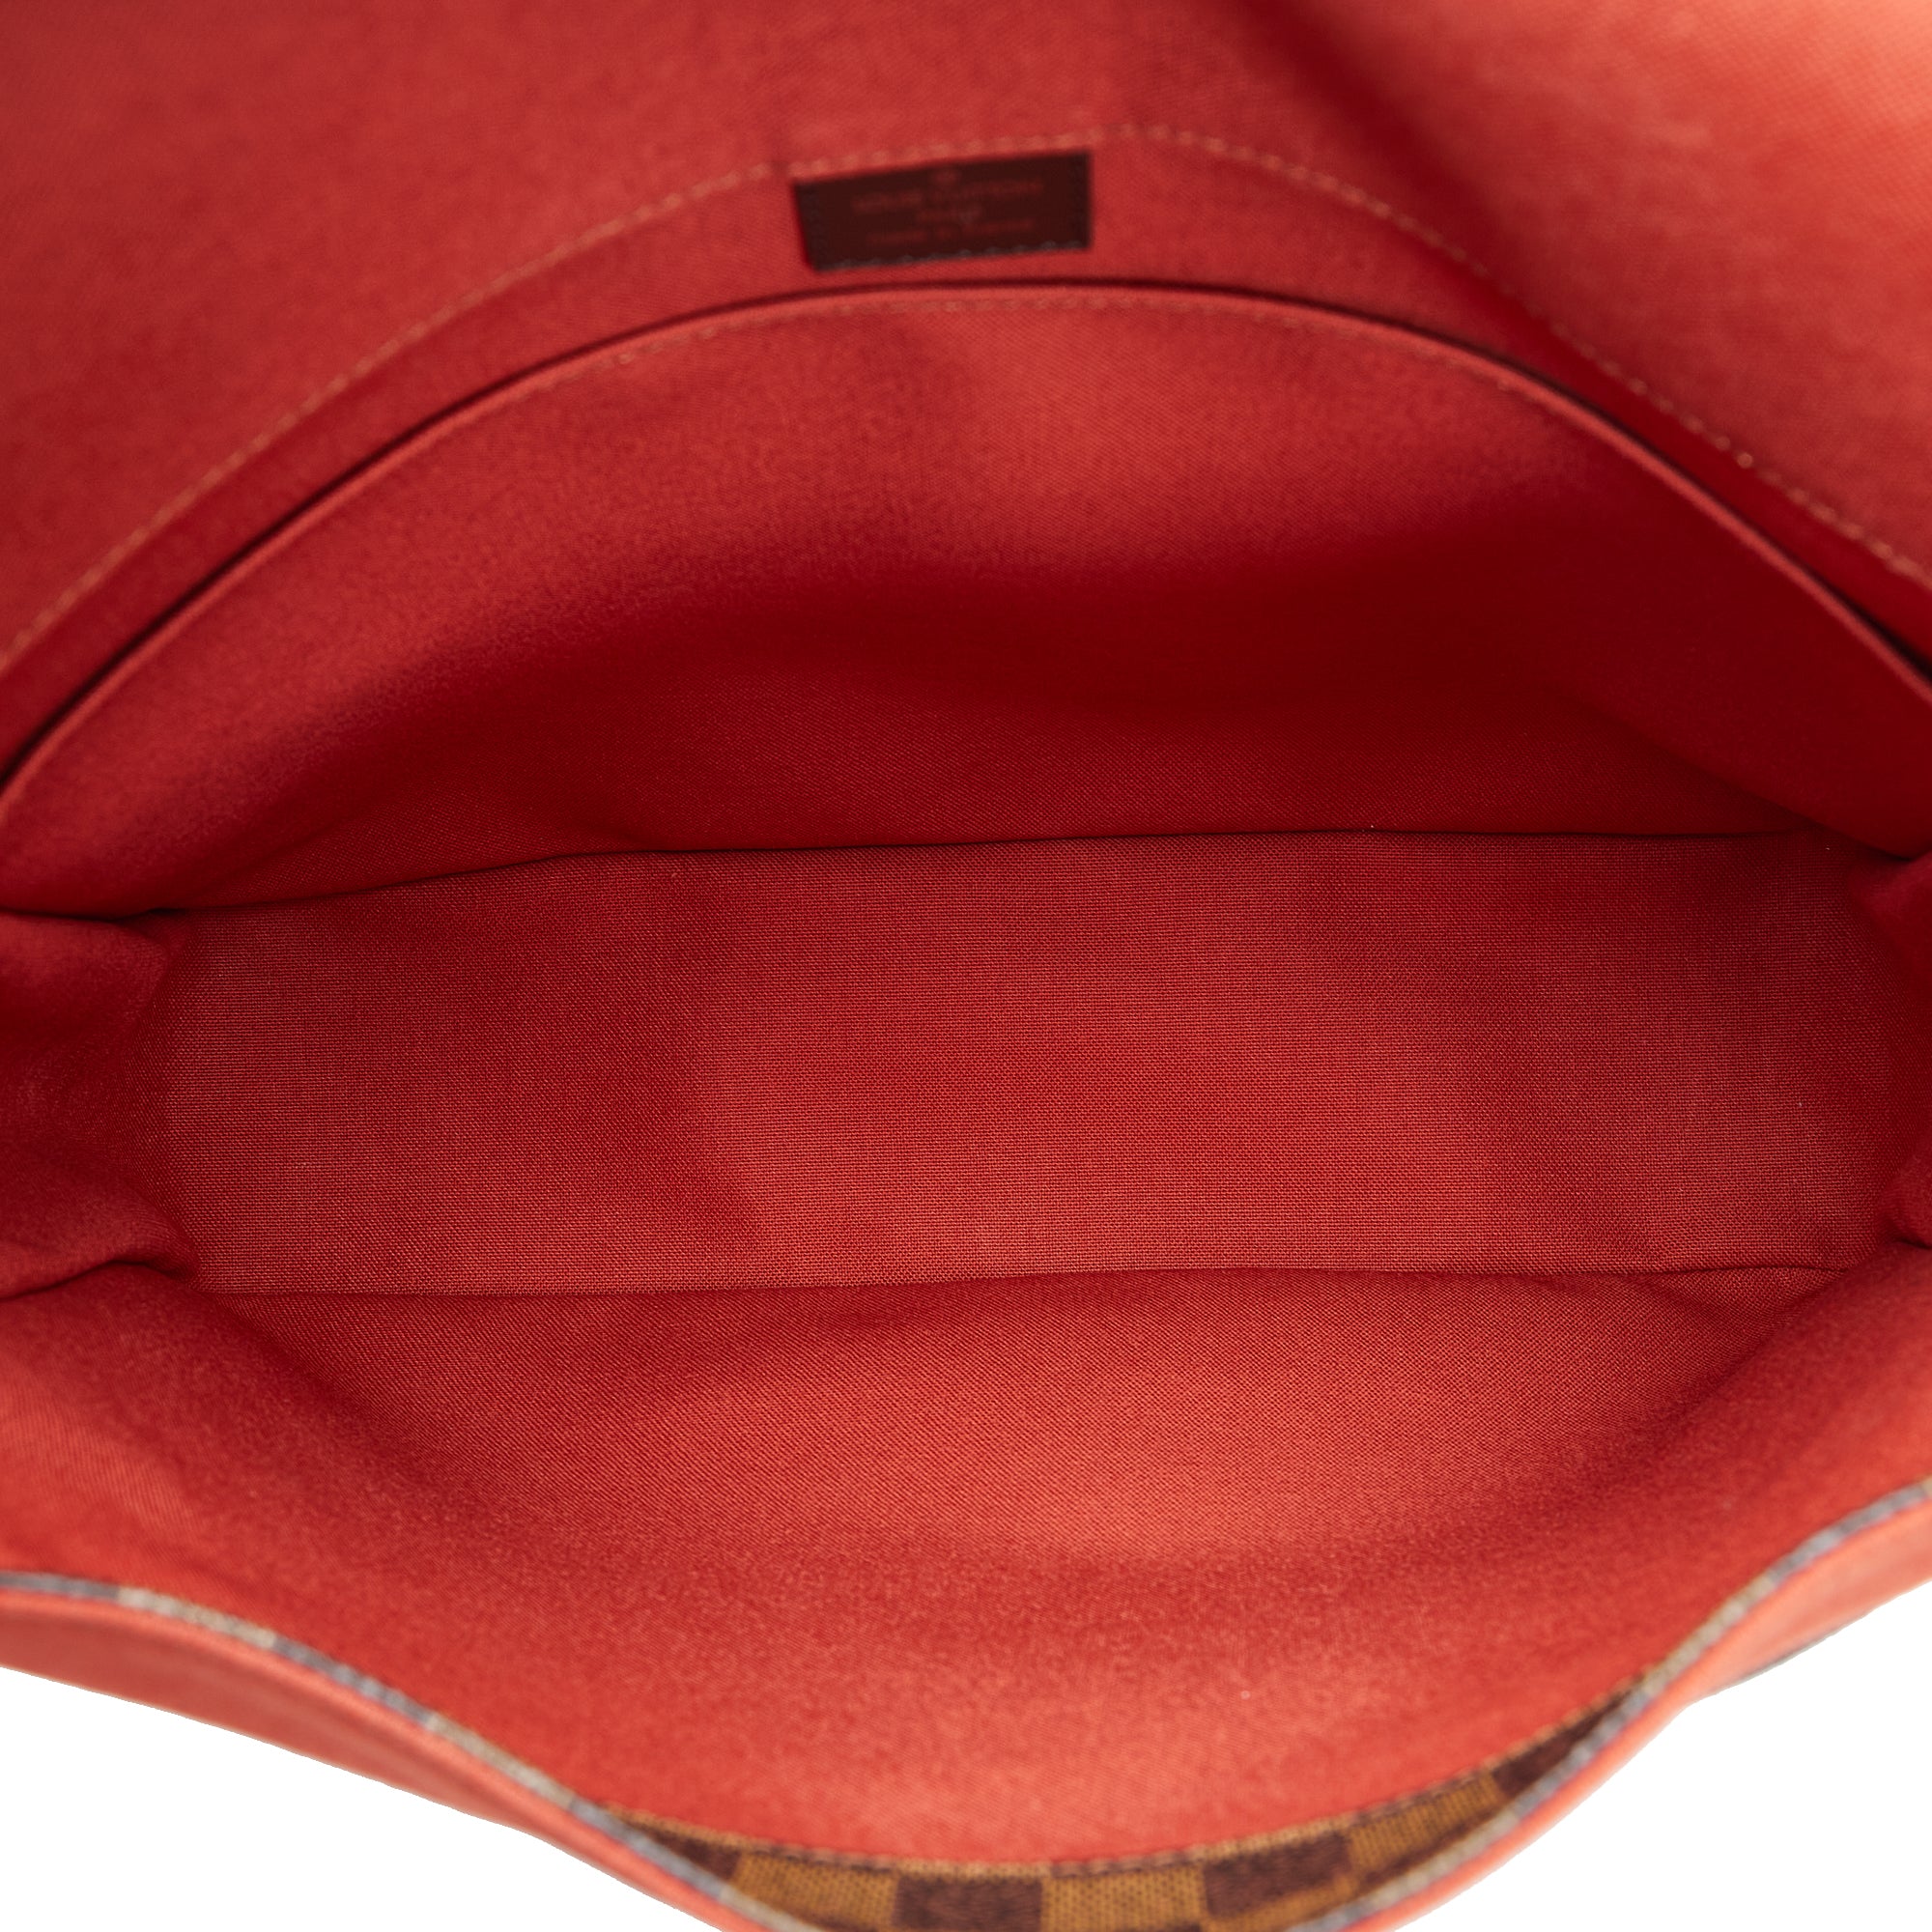 Bastille cloth bag Louis Vuitton Brown in Cloth - 31327553